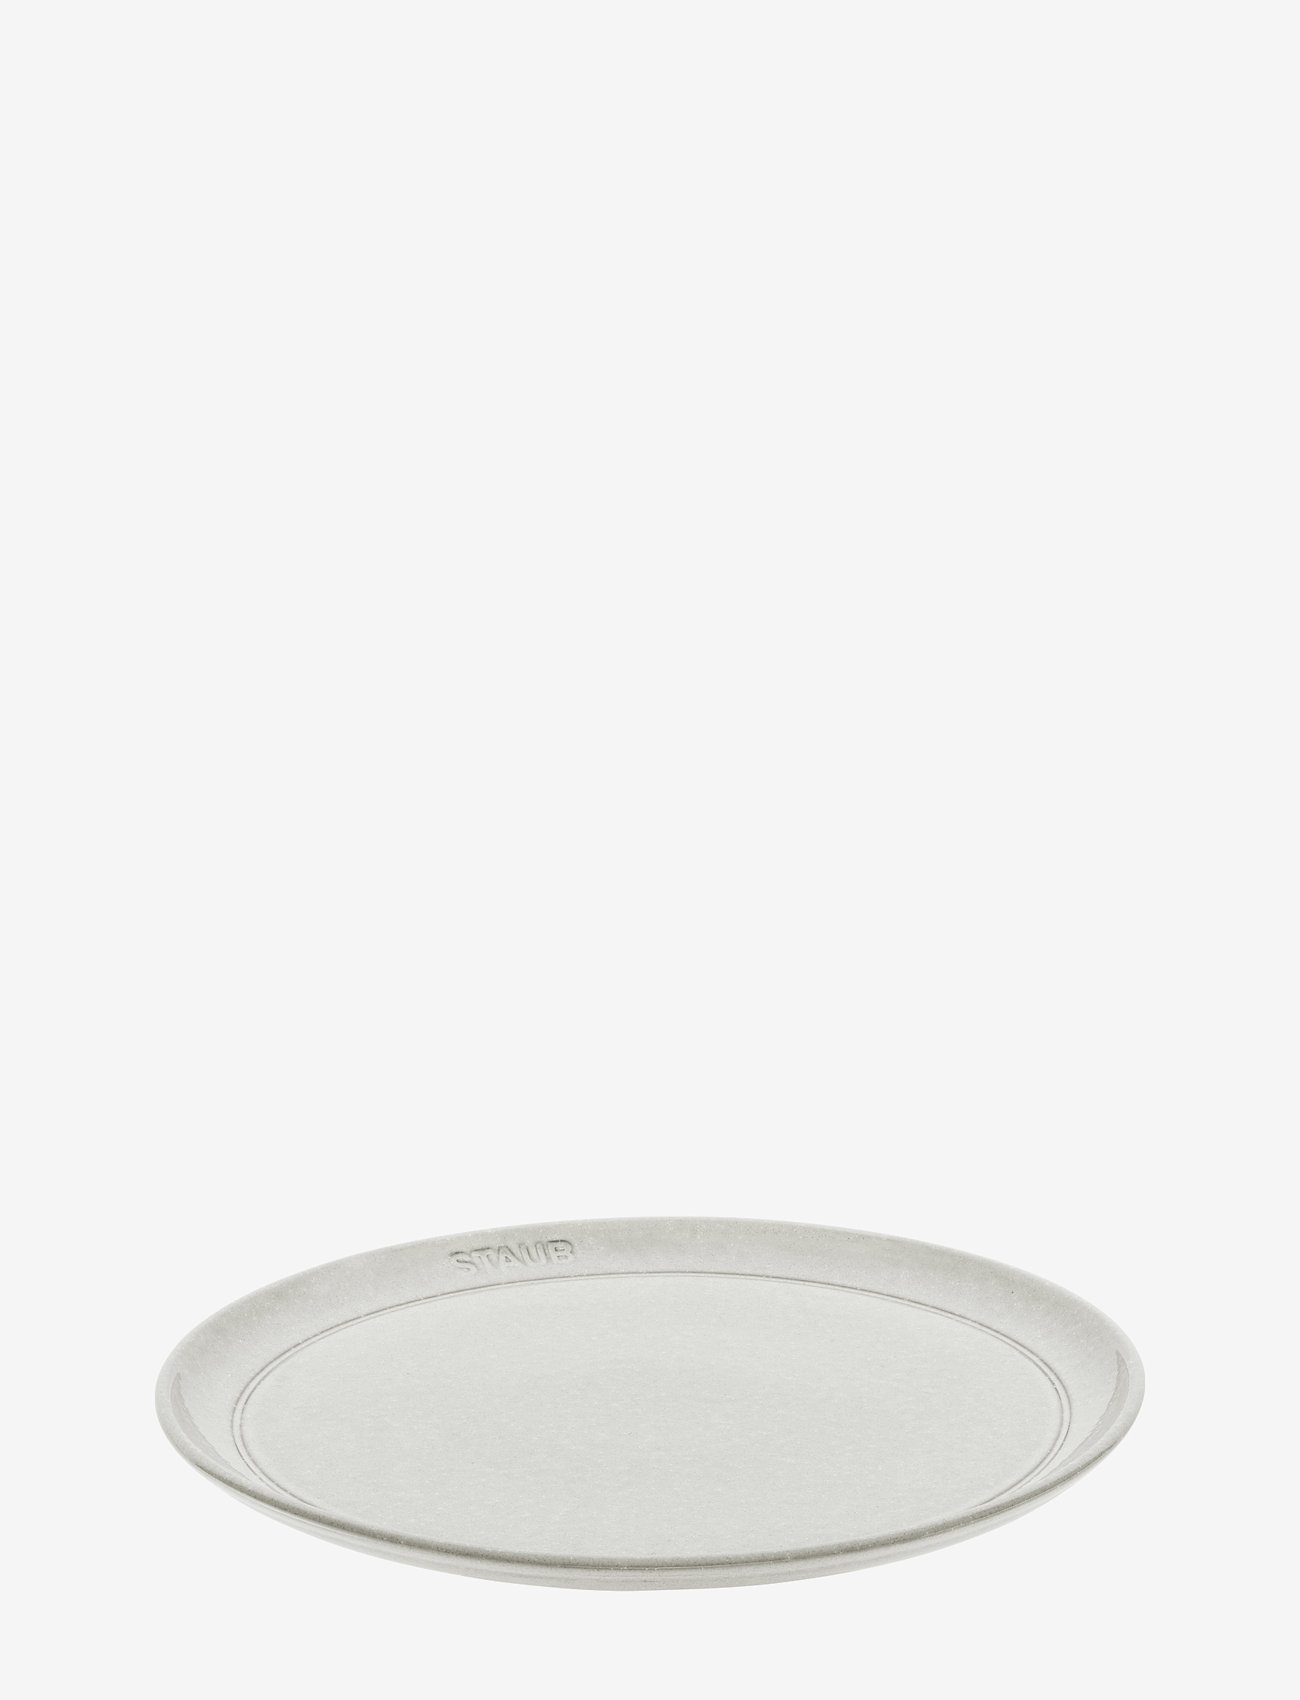 STAUB - Staub, Plate flat 26 cm, white truffle - mažiausios kainos - grey - 0